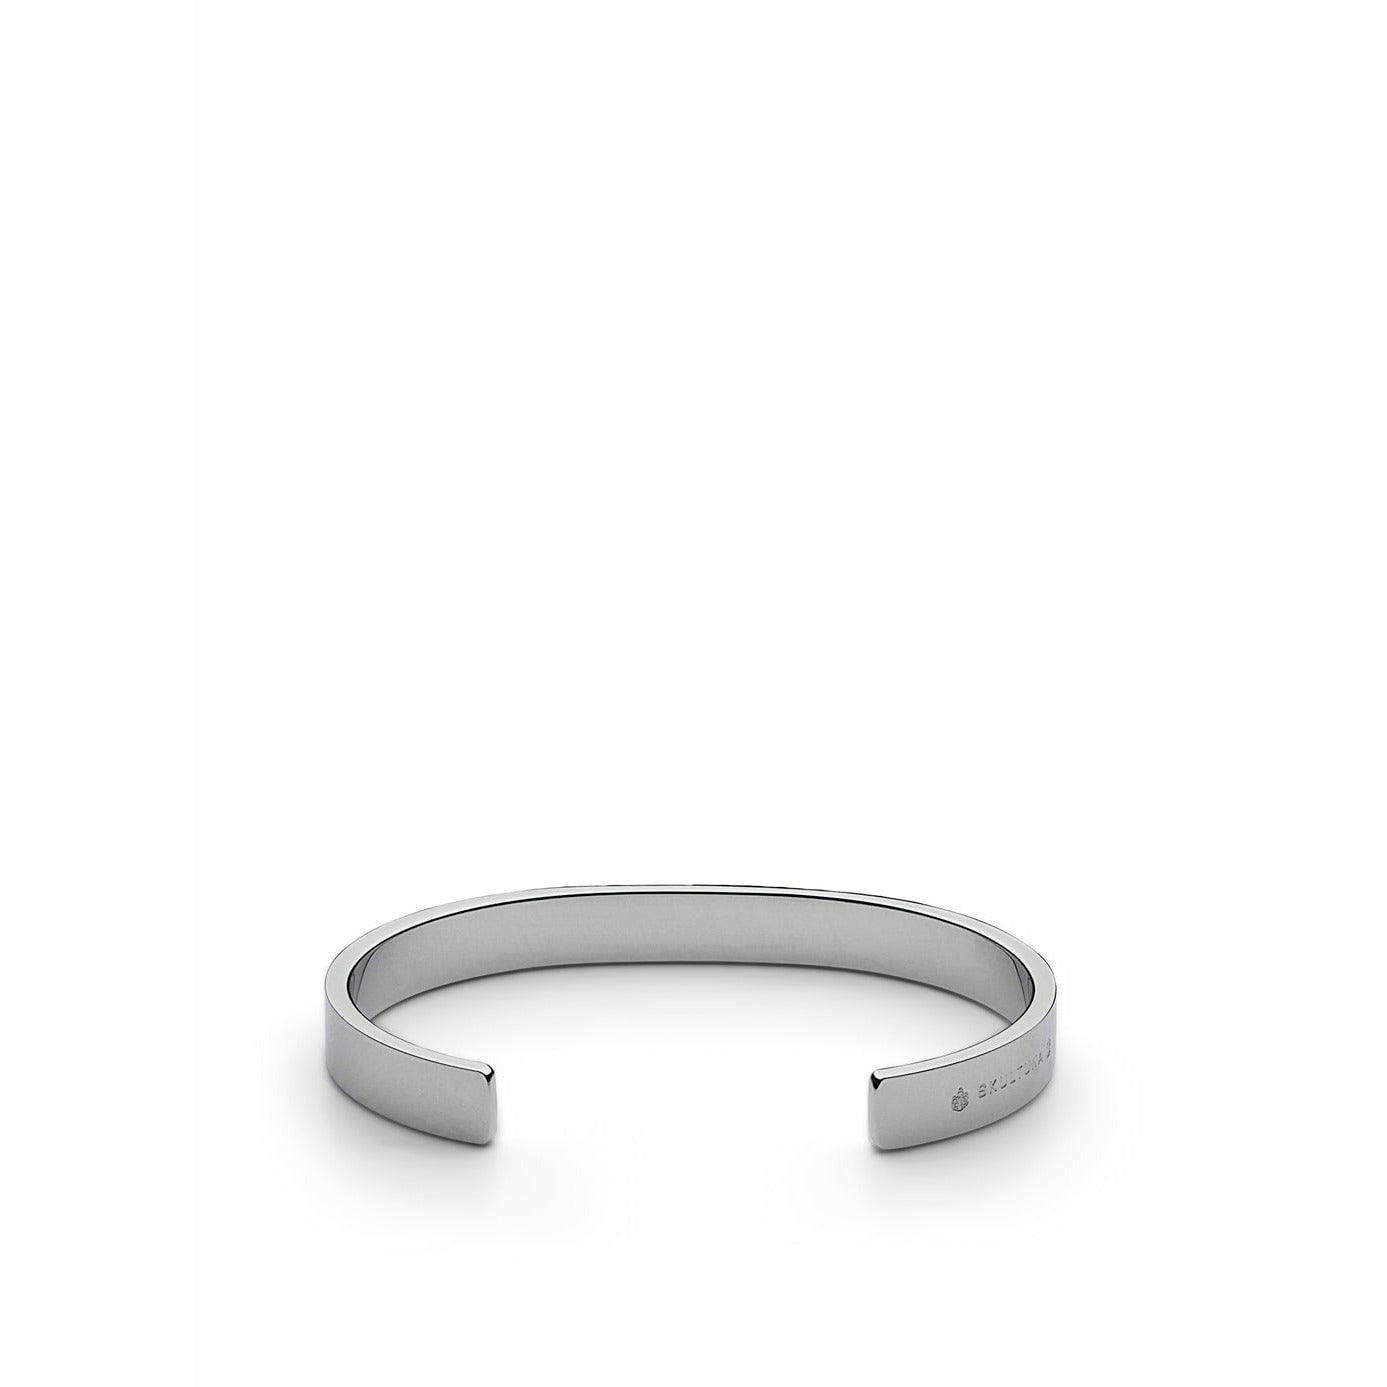 Skultuna SB -armband klein gepolijst staal, Ø14,5 cm